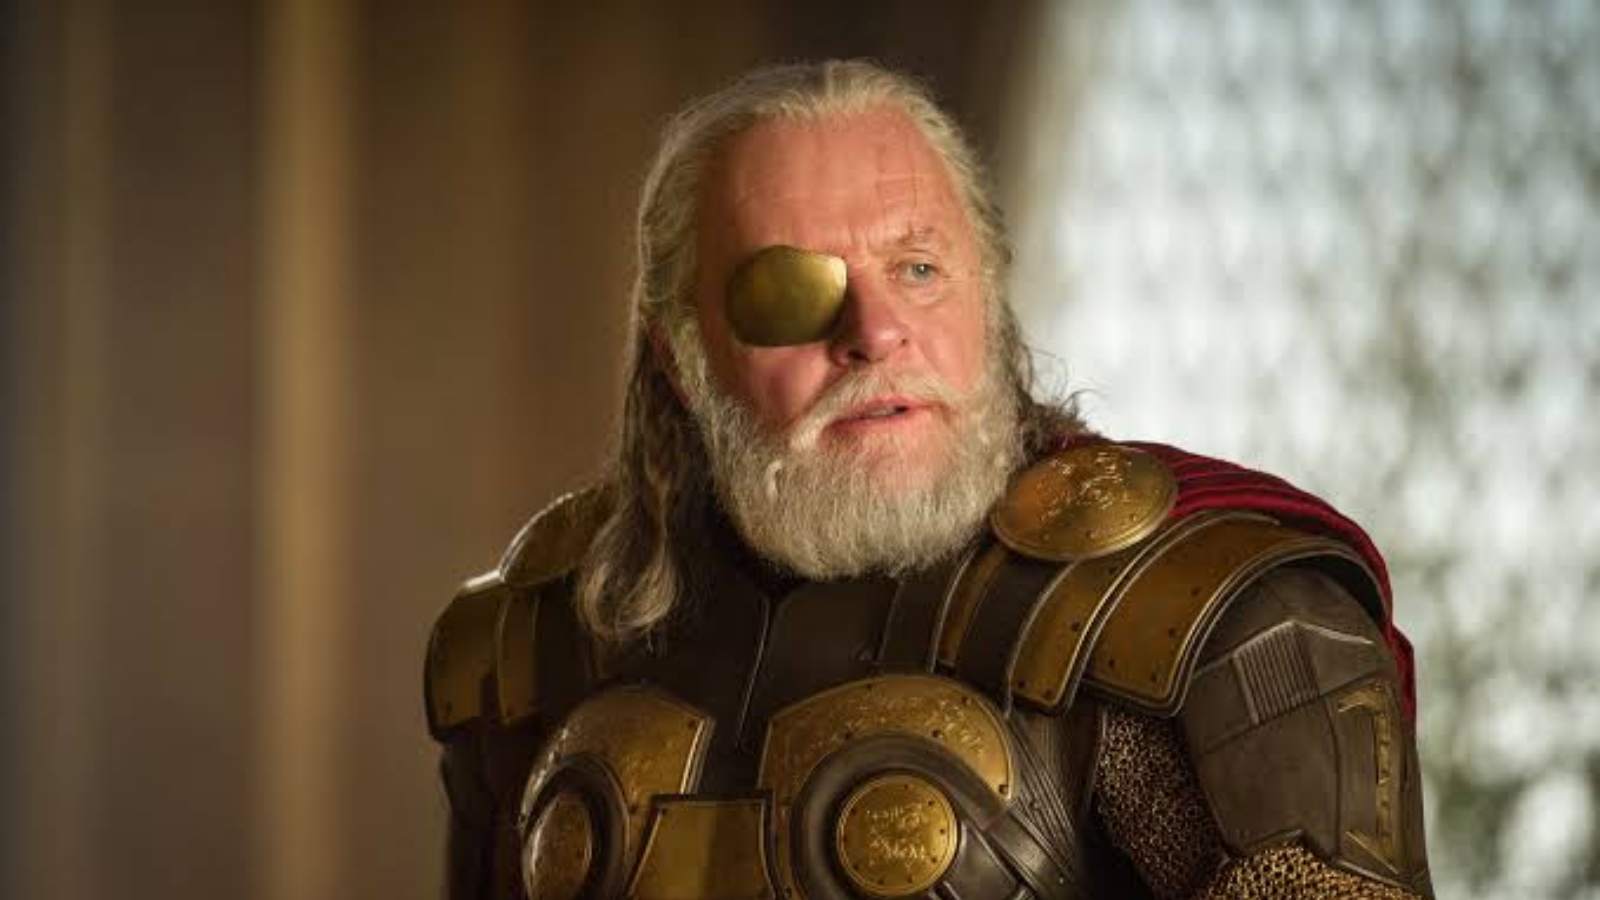 Odin, the Asgardian ruler